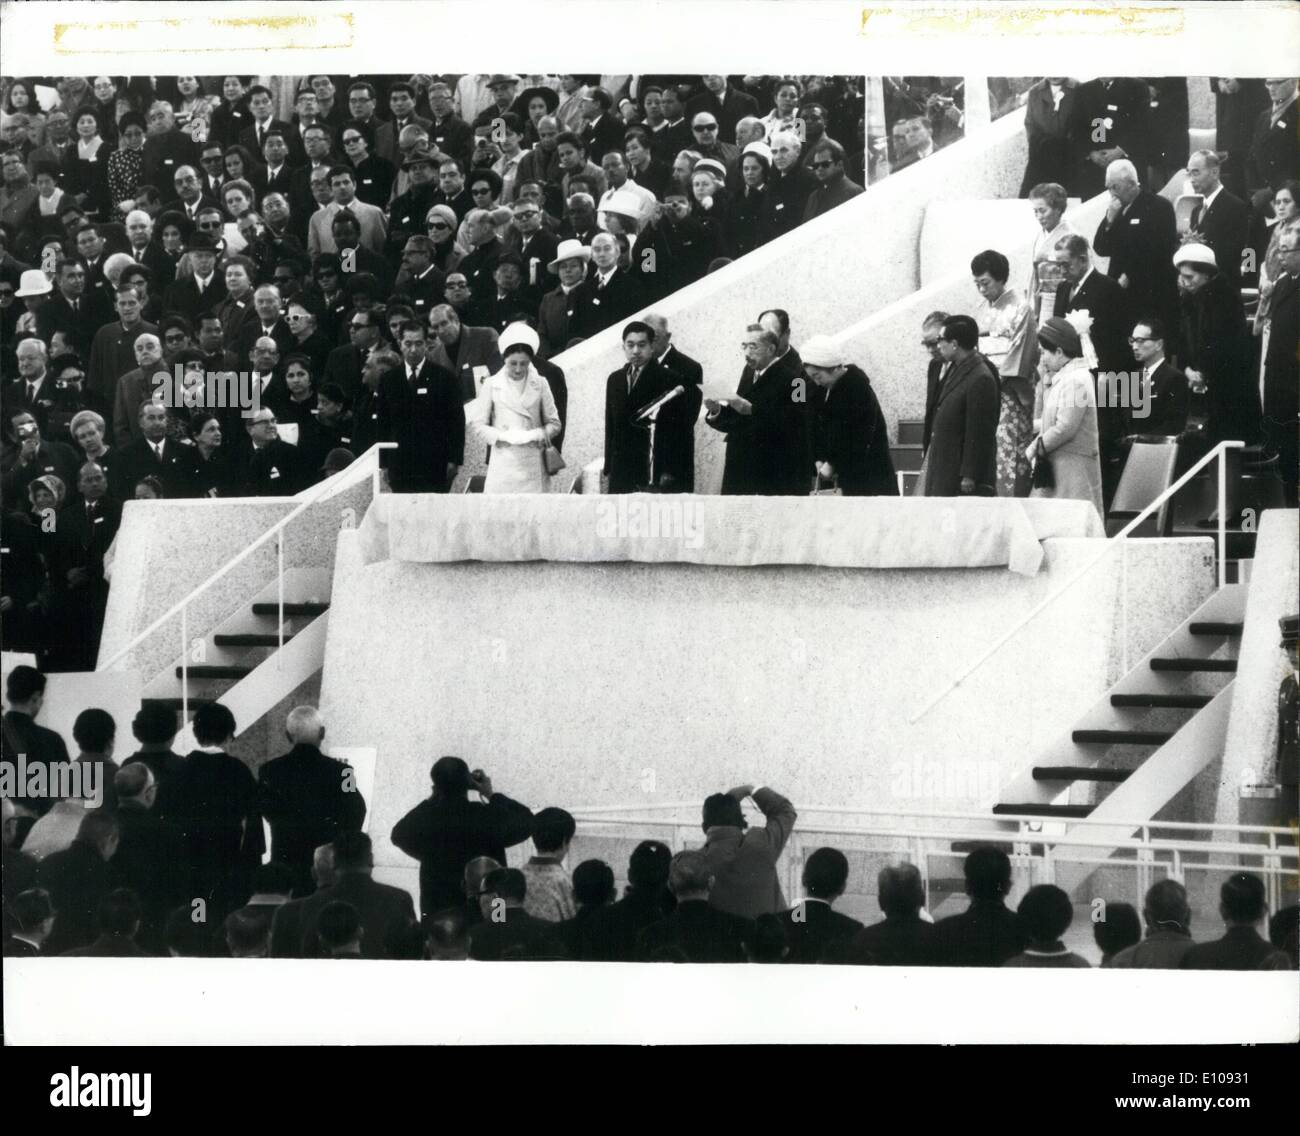 Mar 03, 1970 - Apertura di Expo '70: l'imperatore Hirohito del Giappone ha aperto il Giappone esposizione mondiale 1970, in Osaka, il Sabato (14 marzo), con parole di apprezzamento per la partecipazione di molti paesi del mondo e le espressioni di speranza per il suo successo, come egli ha parlato al spaziose Festival Plaza, nel centro di tentacolare EXPO motivi. Mostra fotografica di:- Imperatore Hirohito dichiarando Expo '70 aperti Foto Stock